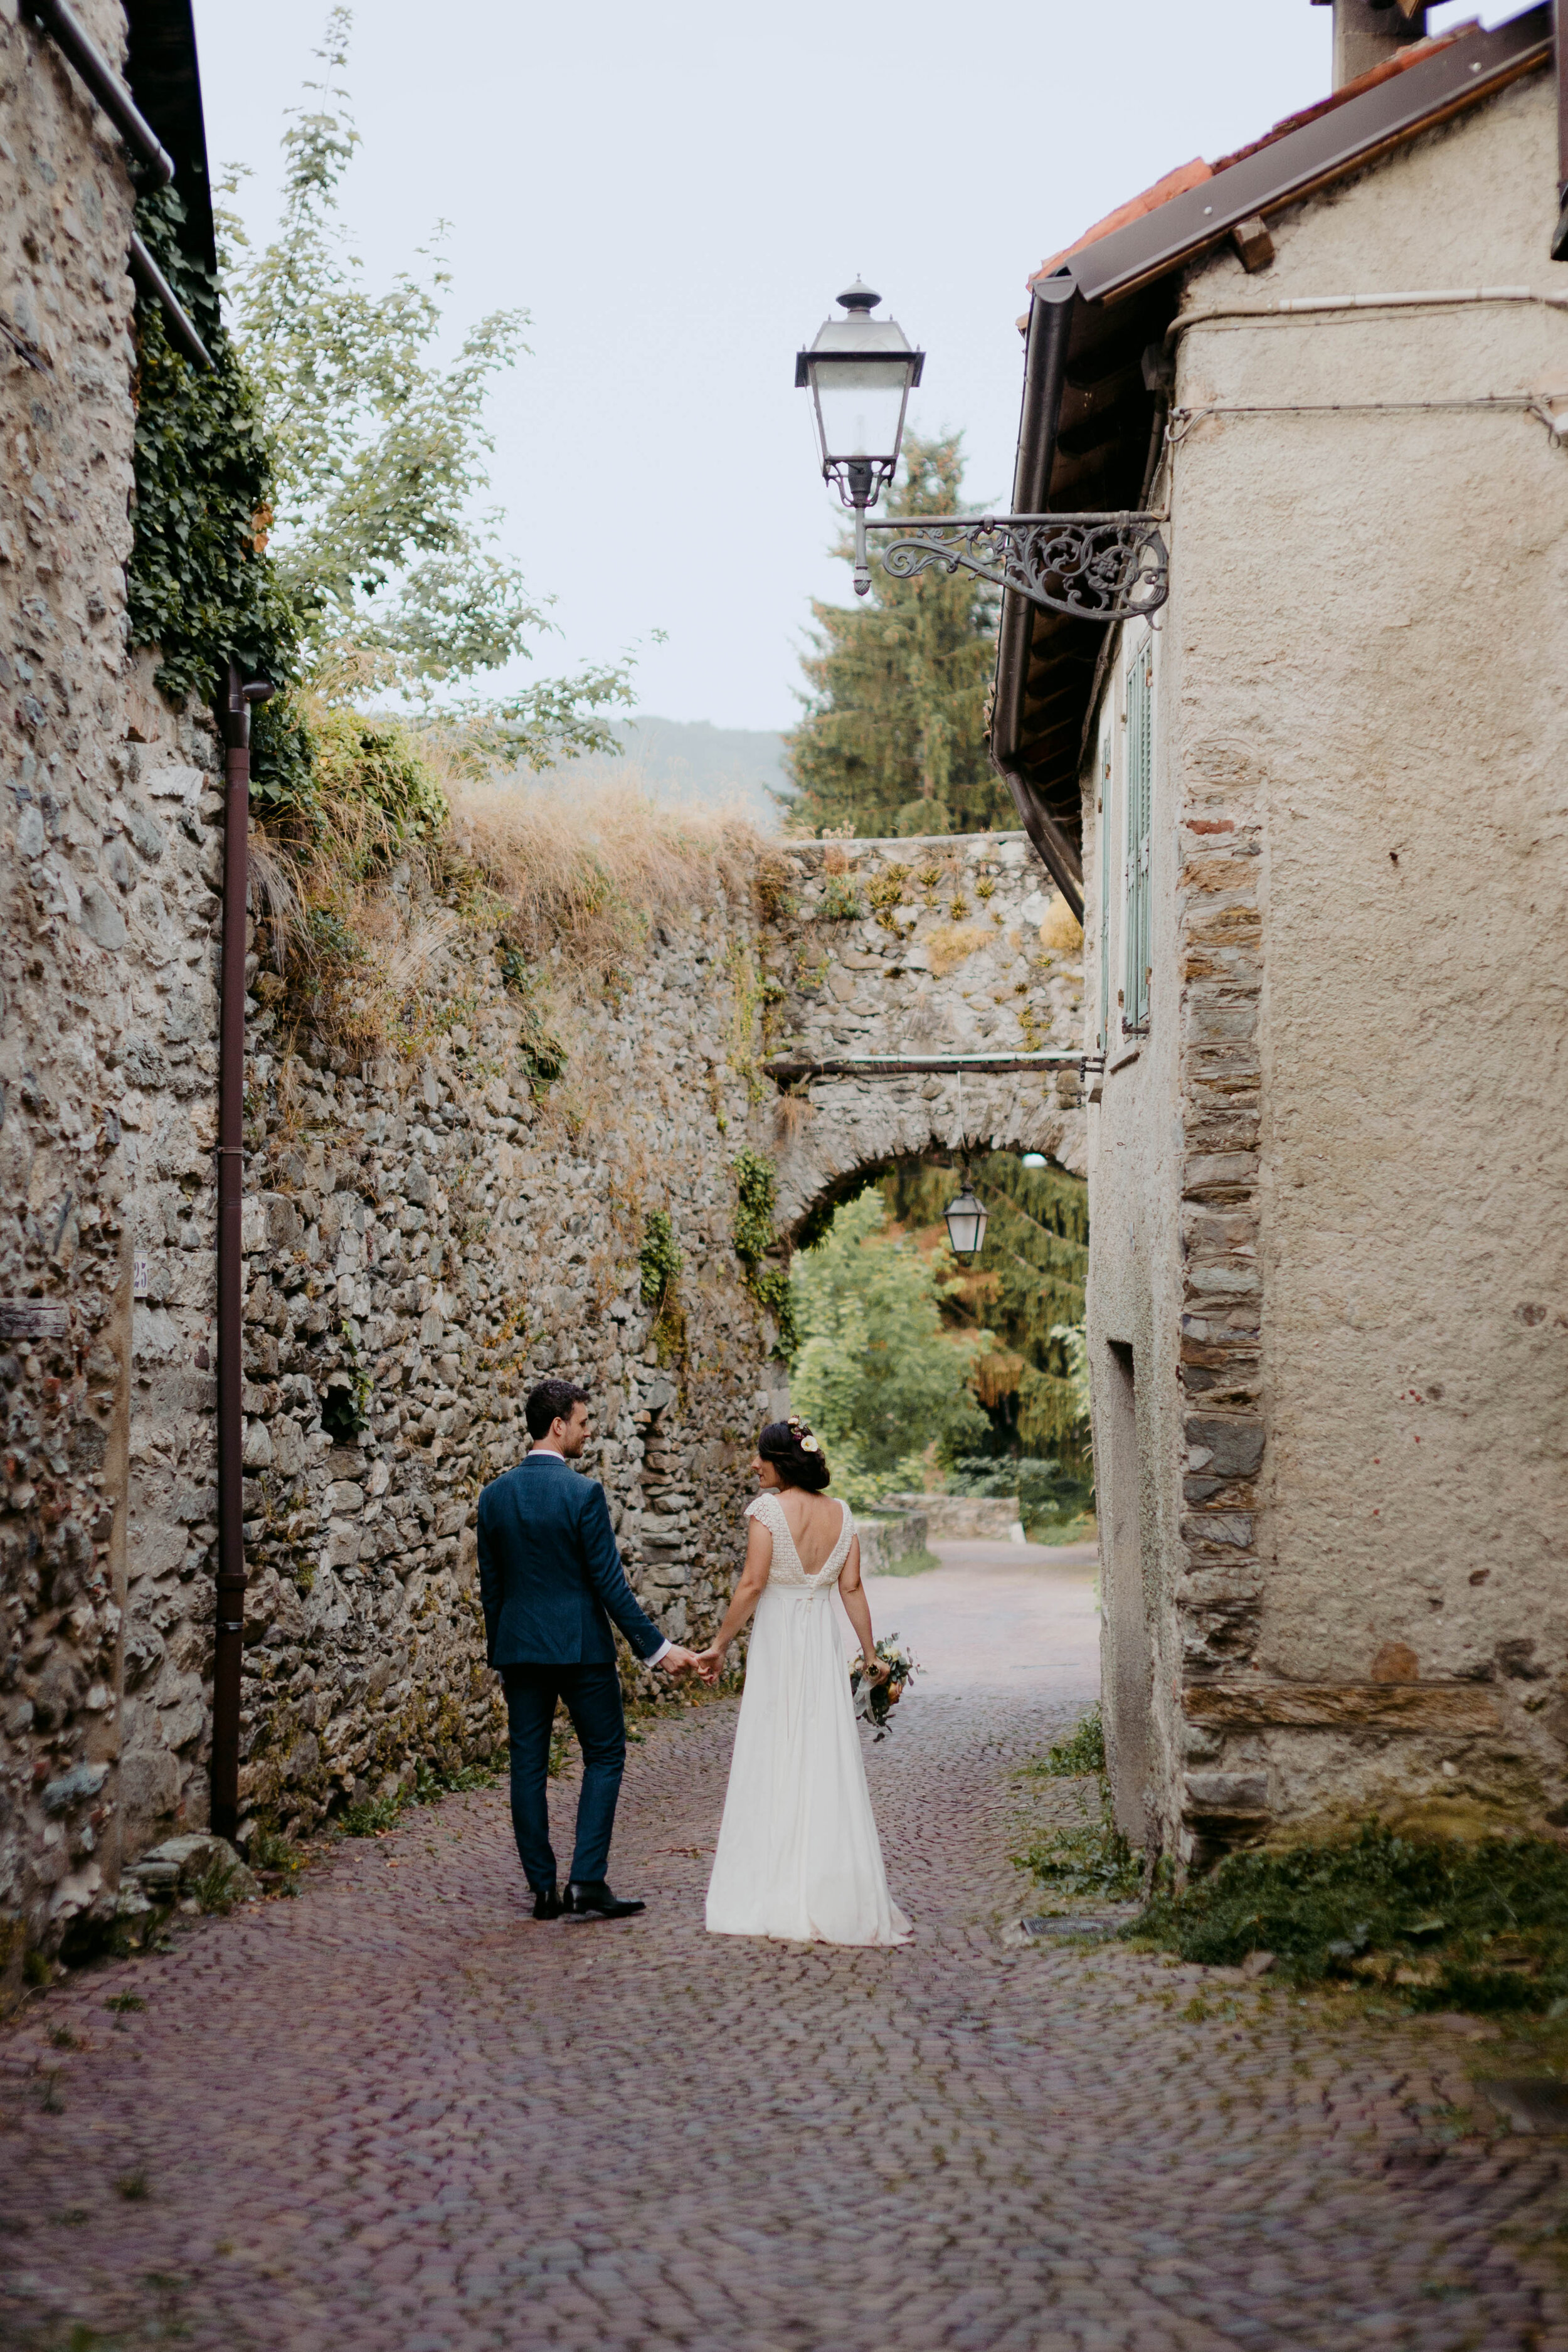 065 - Matrimonio in provincia di Cuneo - Miriam Callegari Fotografa.JPG